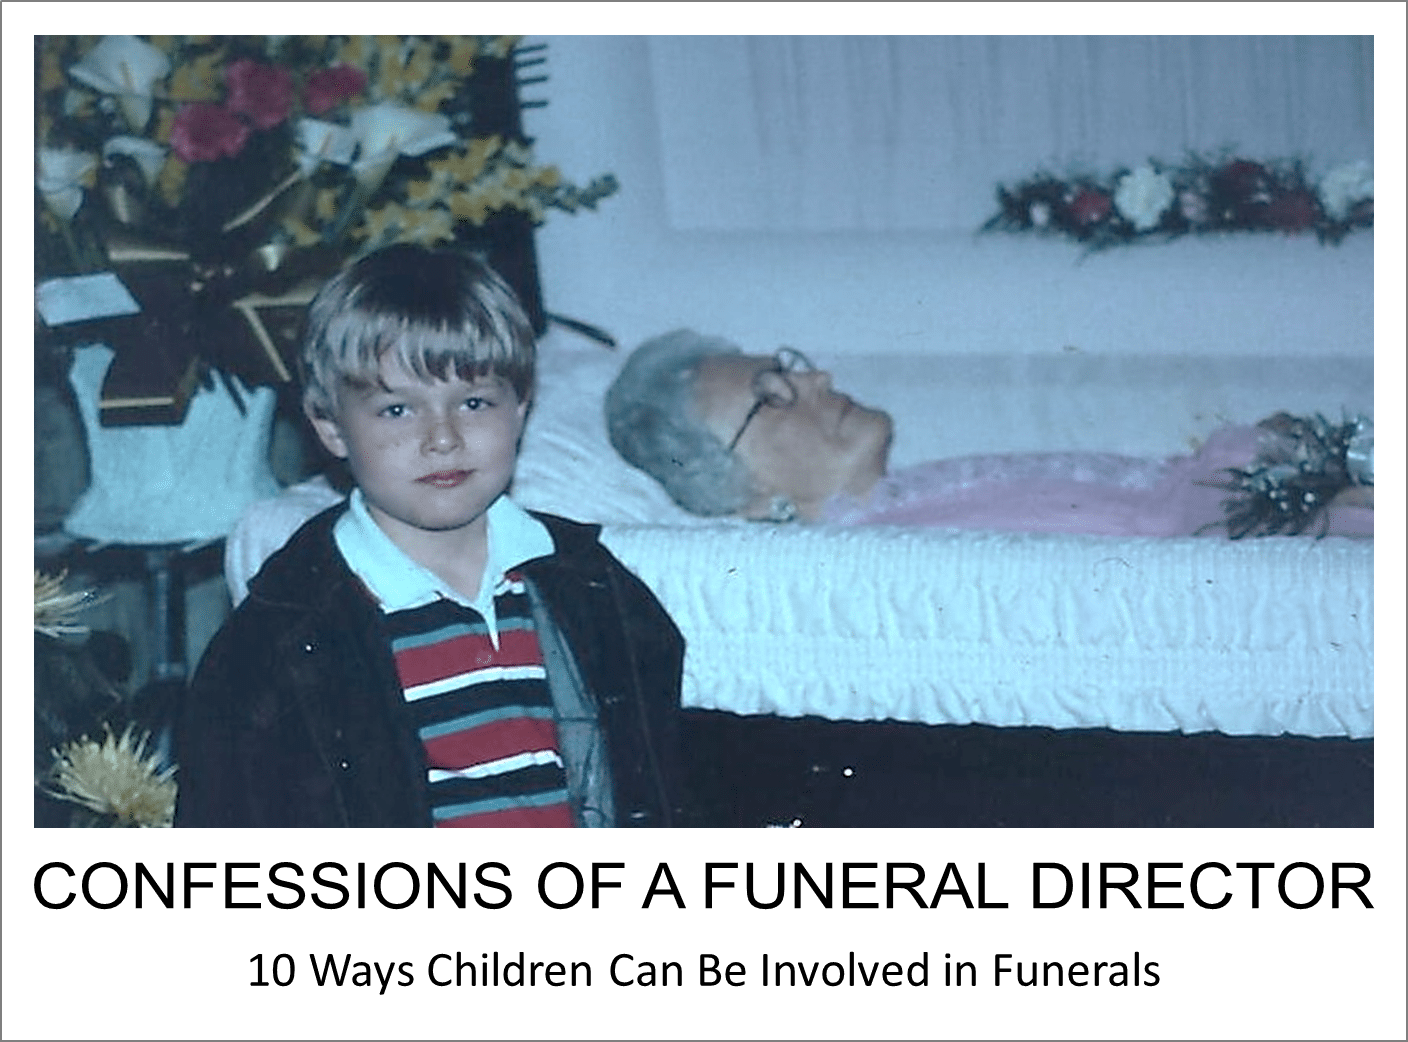 Children at funerals